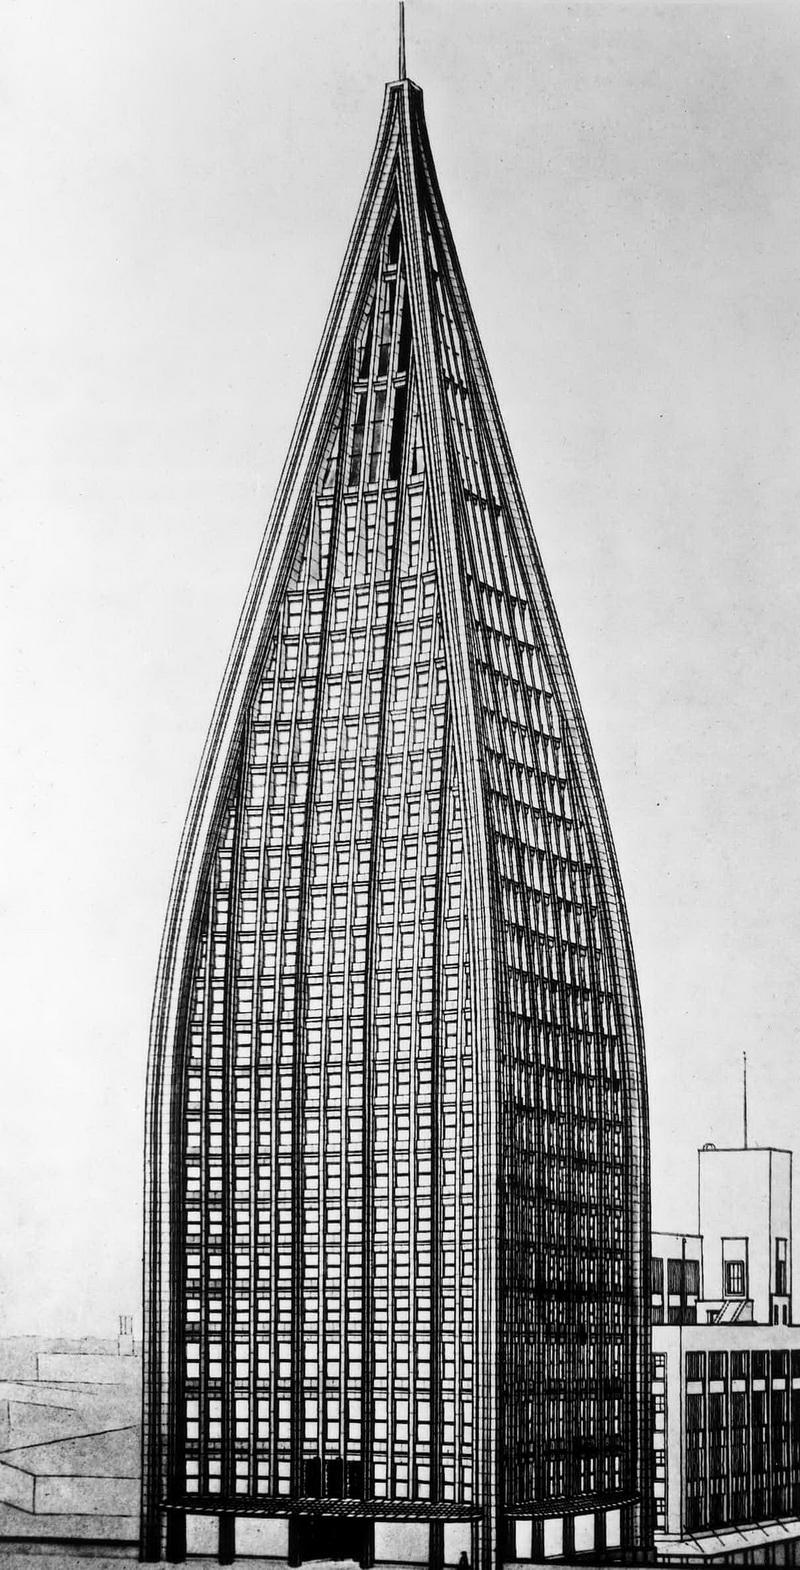 布鲁诺·陶特(bruno taut)设计的摩天大楼,具有表现主义金字塔外形